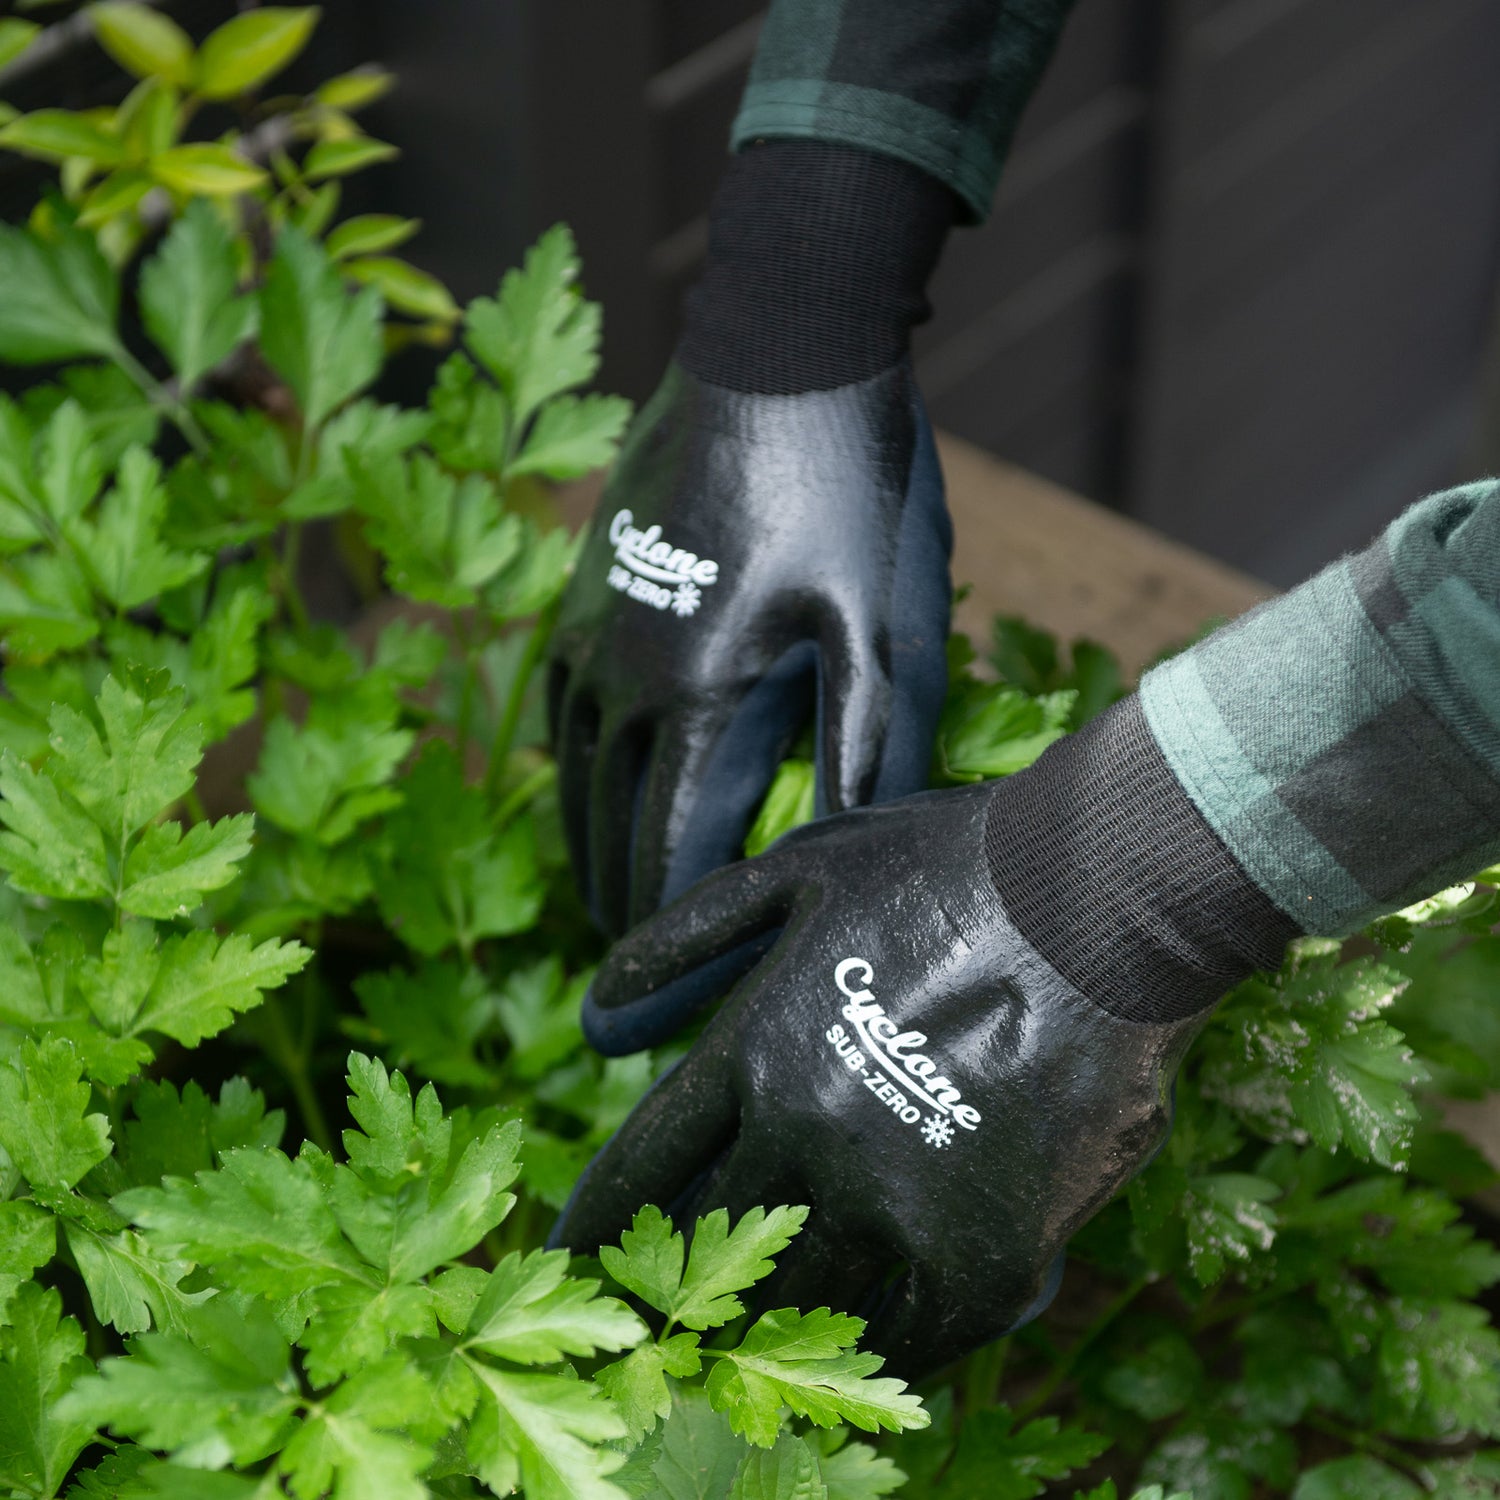 Sub-Zero Garden Gloves